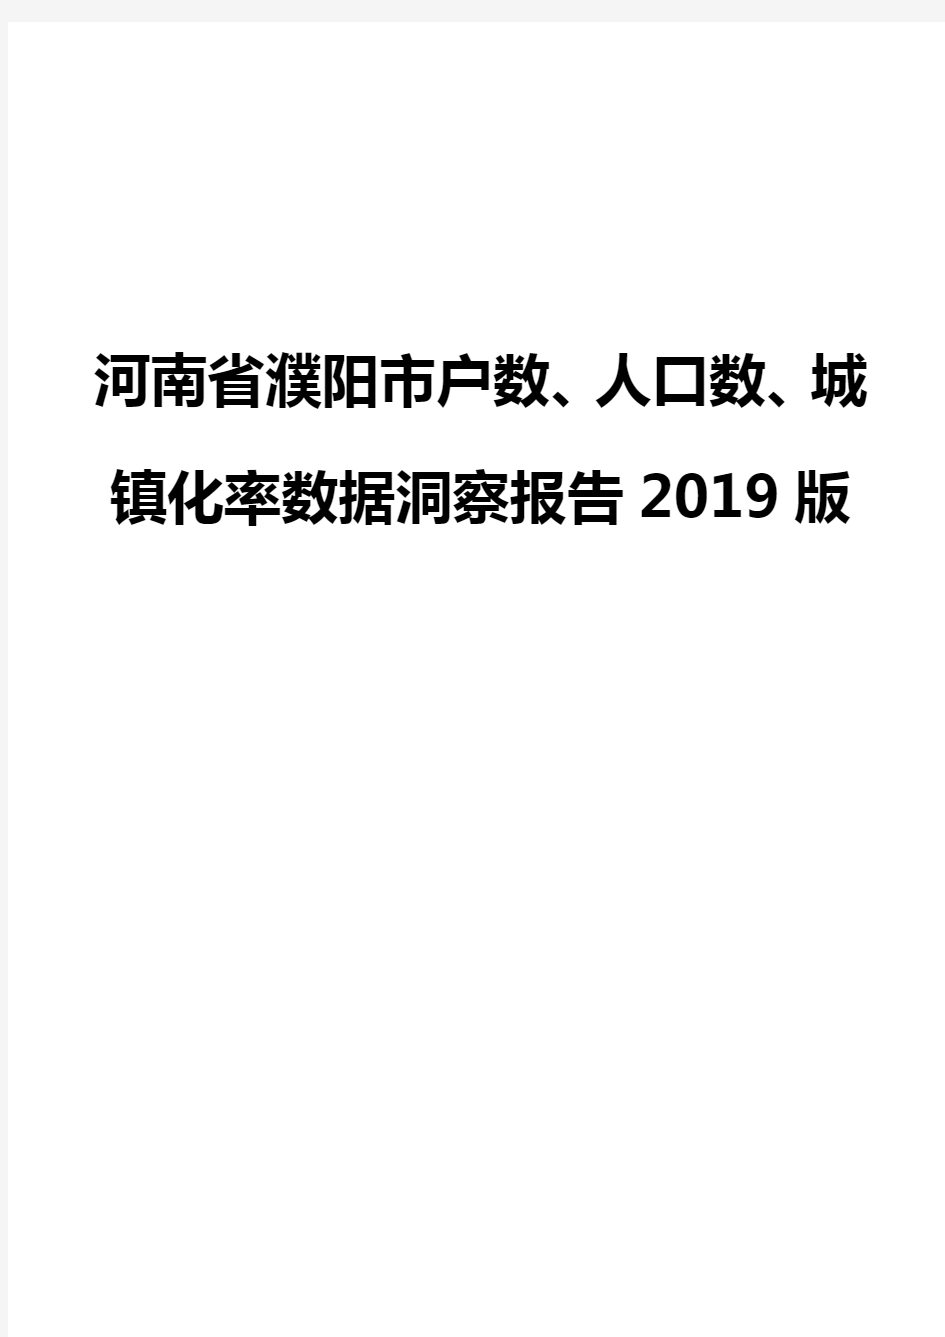 河南省濮阳市户数、人口数、城镇化率数据洞察报告2019版